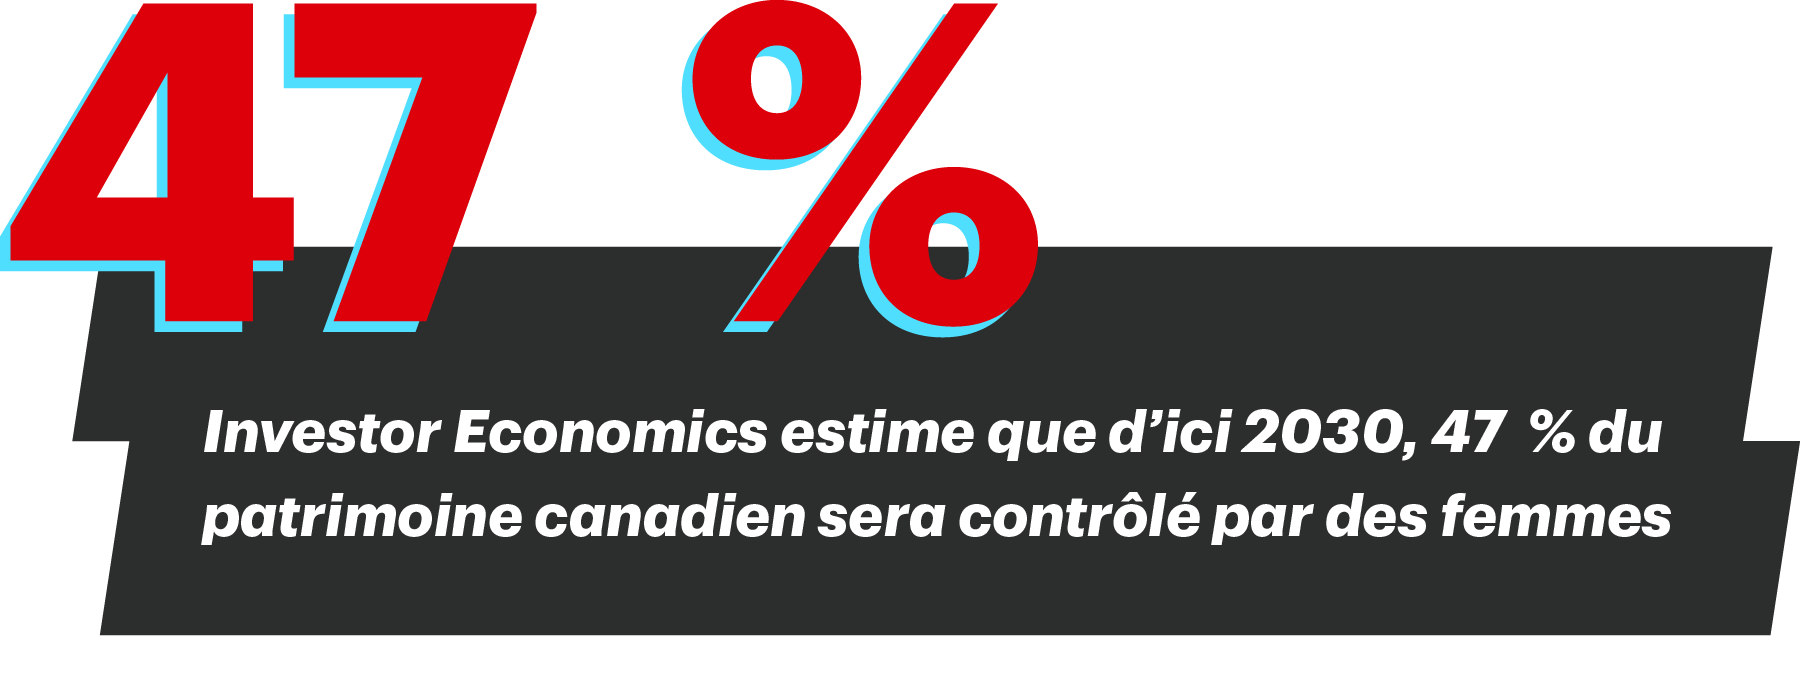 Investor Economics estime que d’ici 2030, 47 % du patrimoine canadien sera contrôlé par des femmes